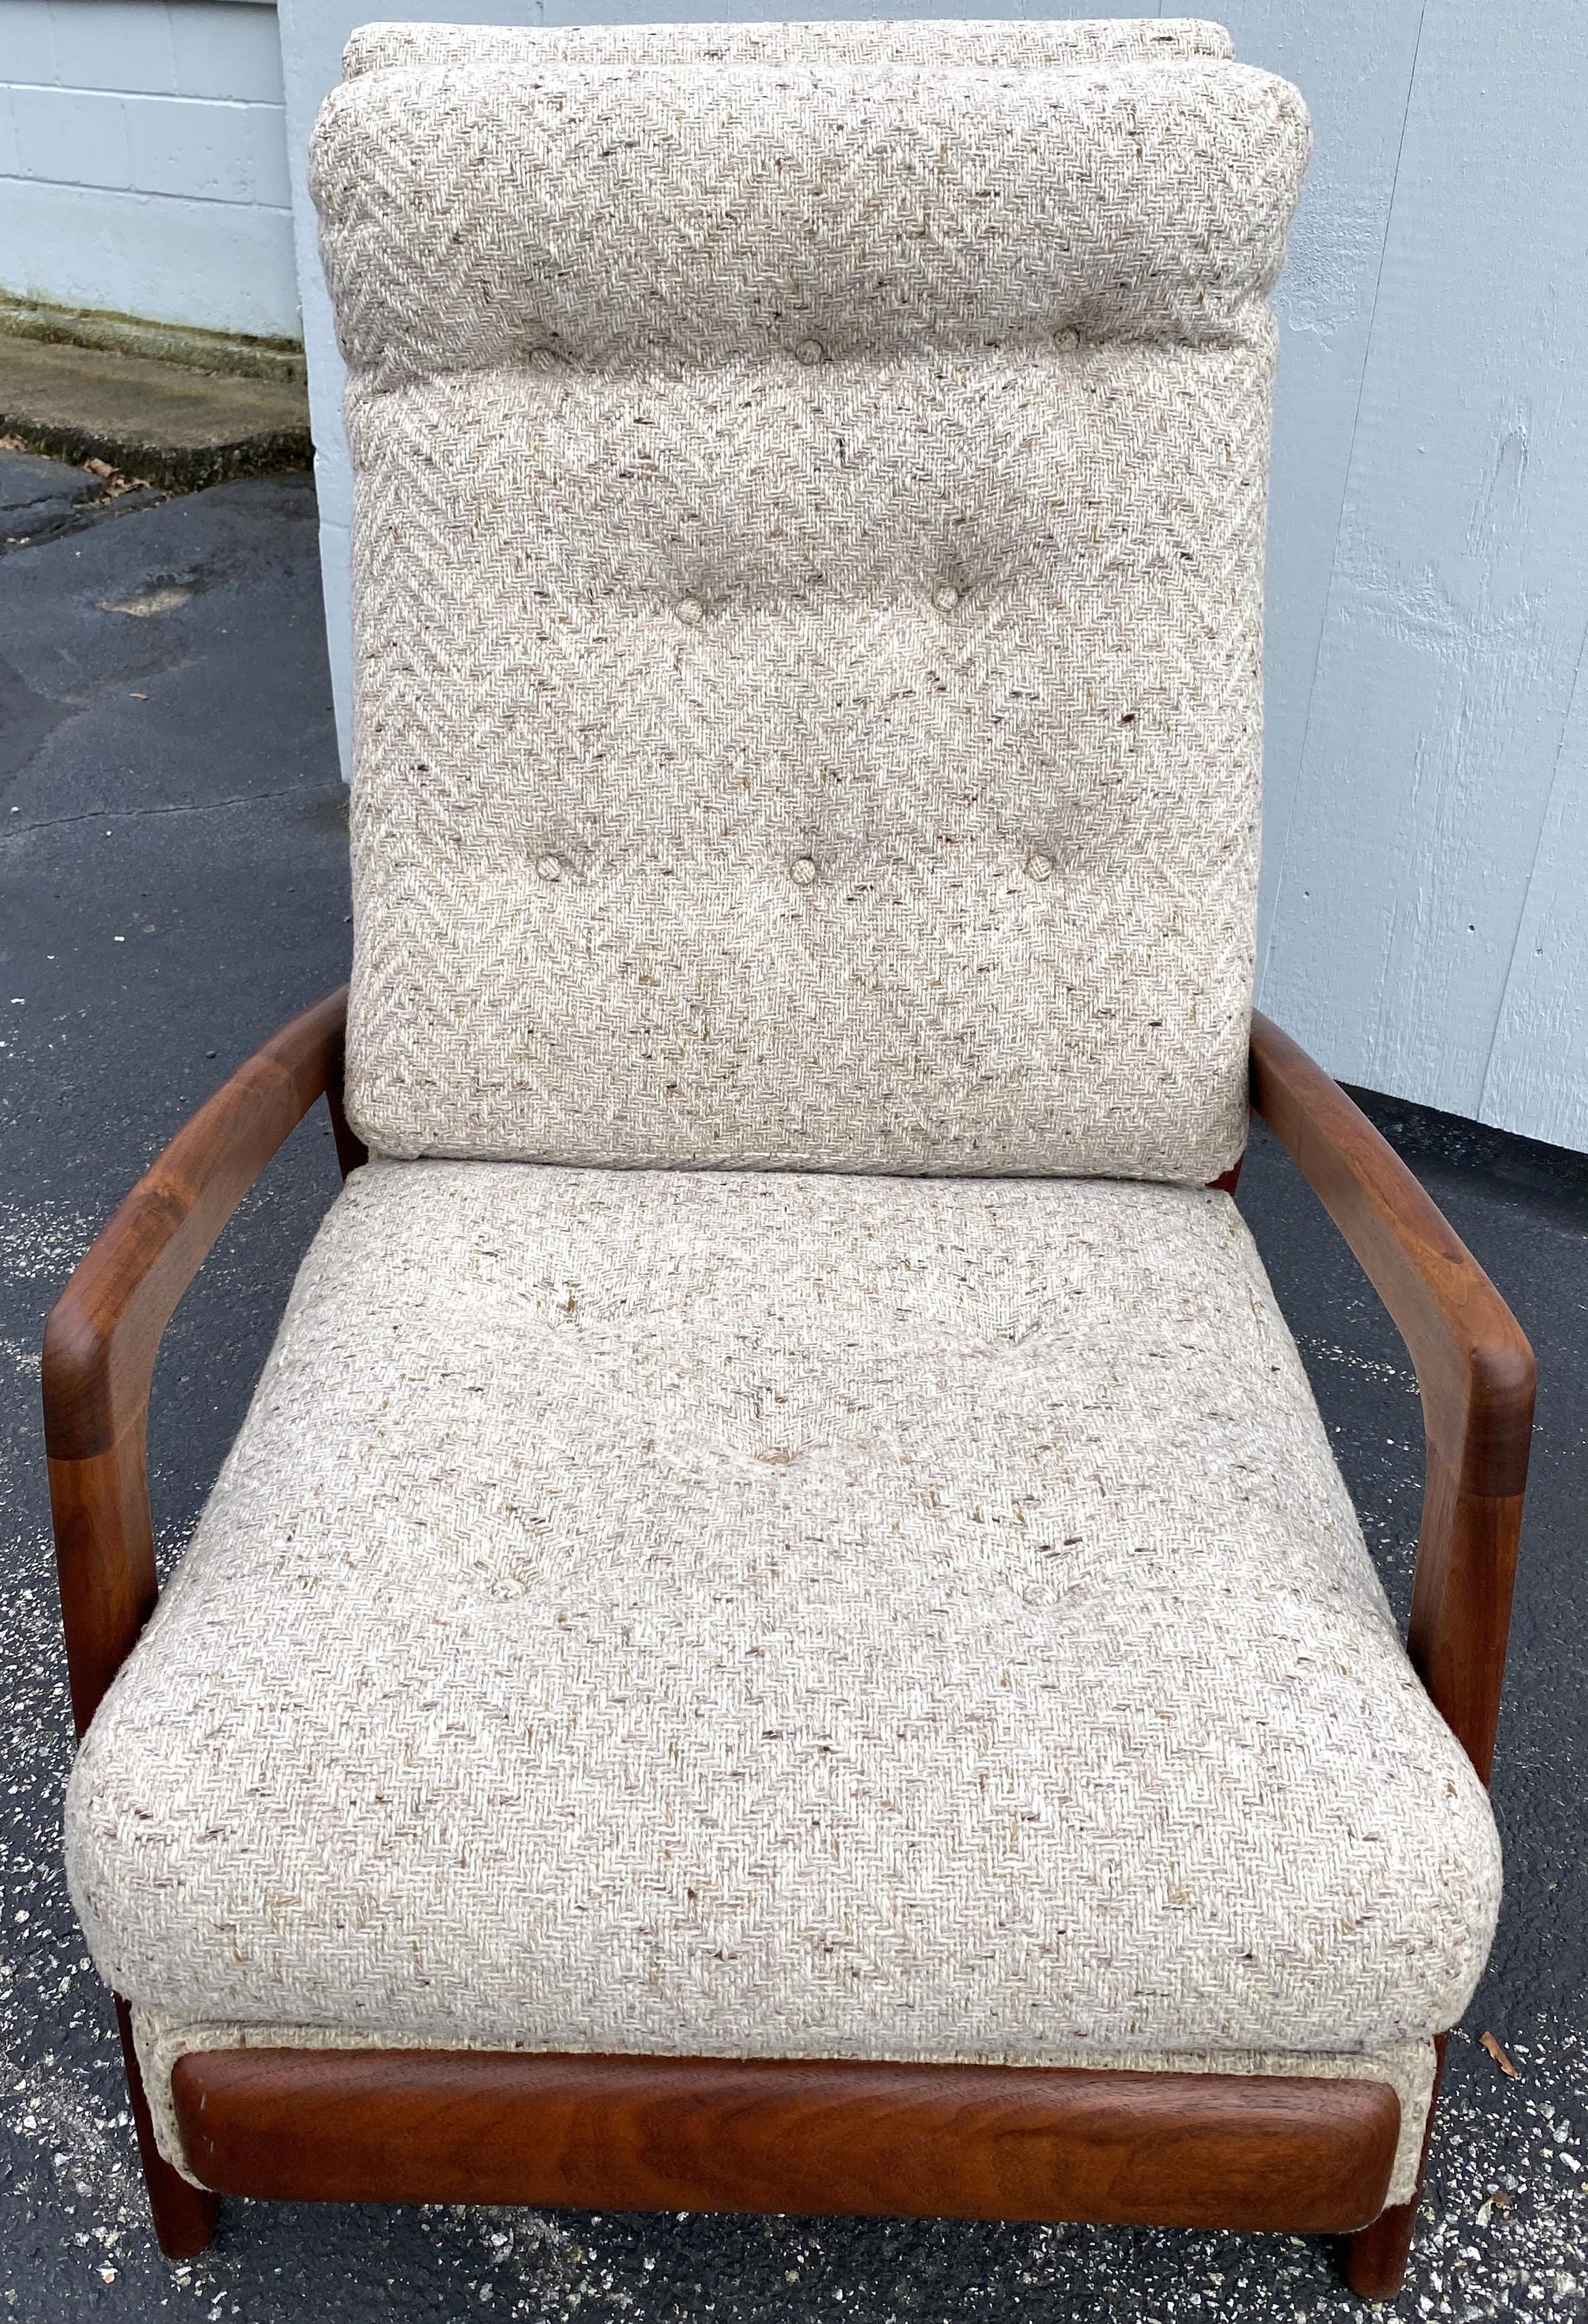 Ein schöner, moderner Sessel aus Nussbaum mit Fußstütze, entworfen von Adrian Pearsall (1925-2011) für Craft Associates. Adrian Pearsall gründete 1952 Craft Associates in Pennsylvania, um seine eigenen Entwürfe herzustellen. In den späten 1950er